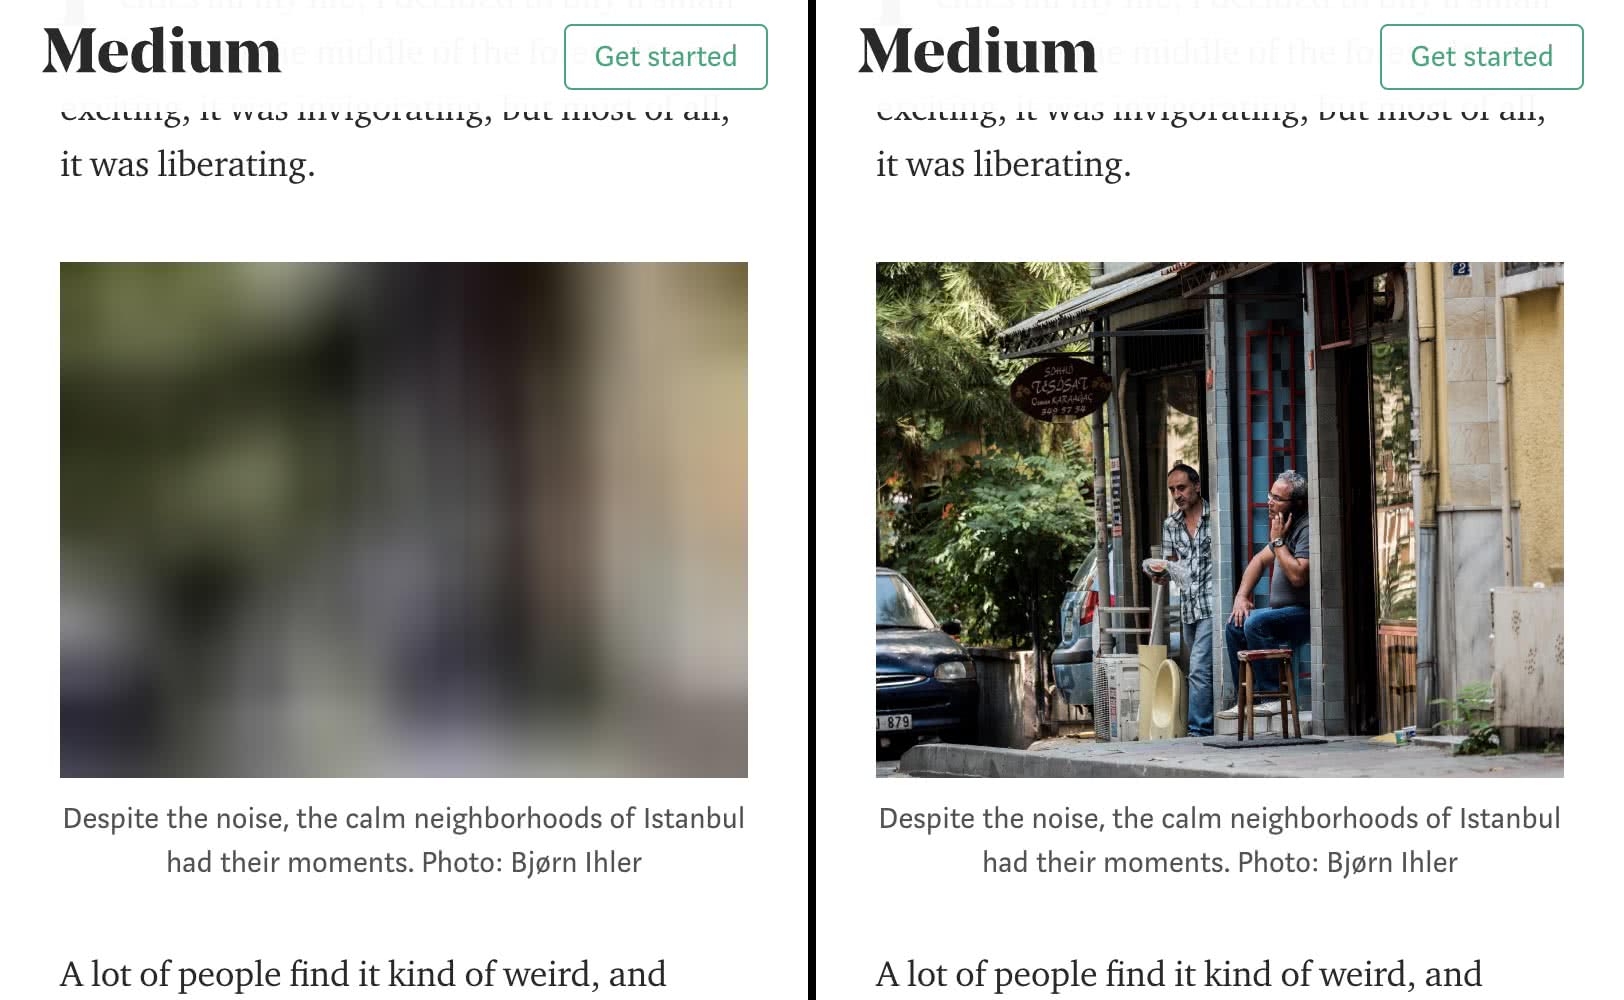 ภาพหน้าจอของเว็บไซต์ Medium ในการท่องเว็บ ซึ่งสาธิตการโหลดแบบ Lazy Loading ตัวยึดตำแหน่งที่เบลออยู่ทางด้านซ้ายและทรัพยากรที่โหลดอยู่ทางด้านขวา